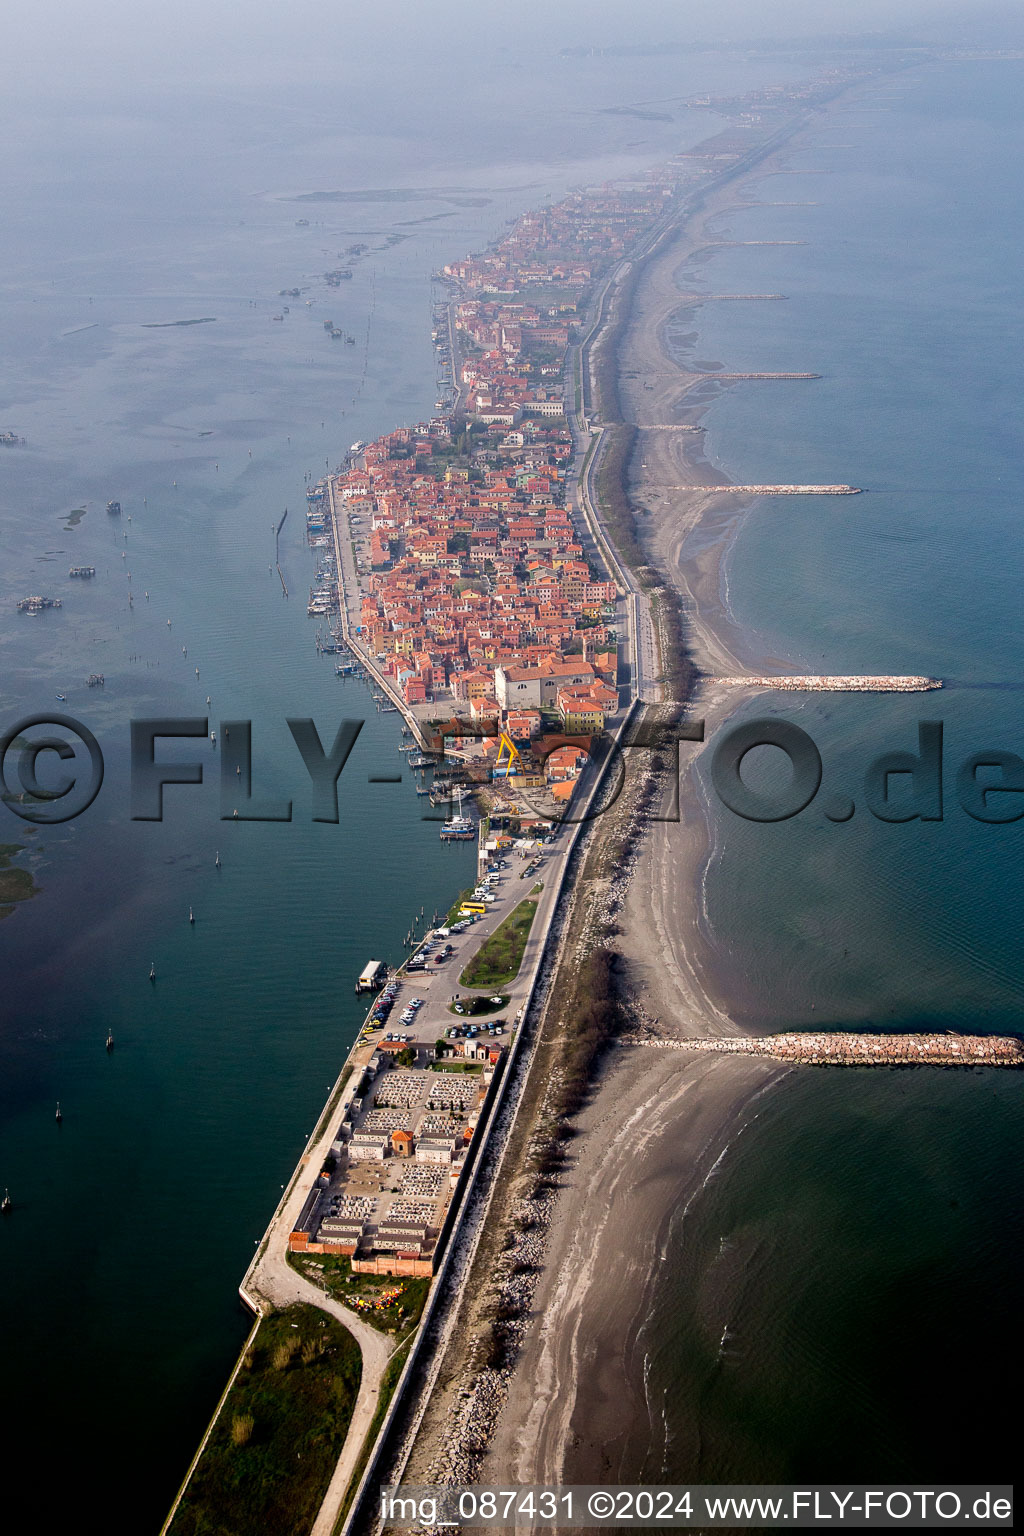 Luftbild von Siedlungsgebiet im Ortsteil Pellestrina in Venedig in Venetien, Italien